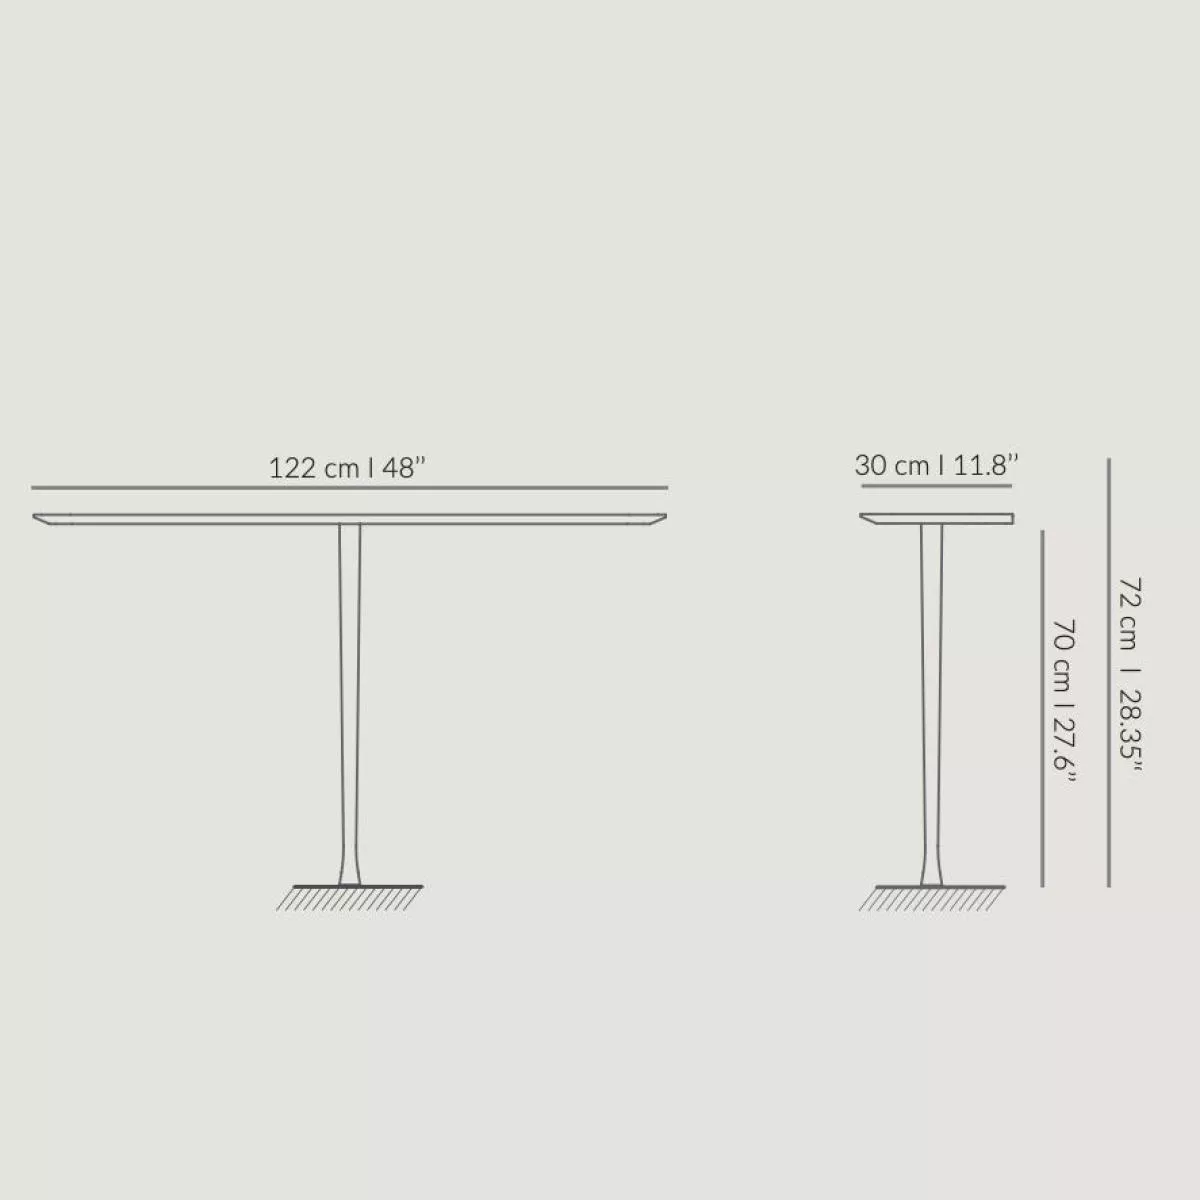 Stilvolles kleines Wandregal / Sideboard mit Echtholzfurnier – Modell 2 (stehend)